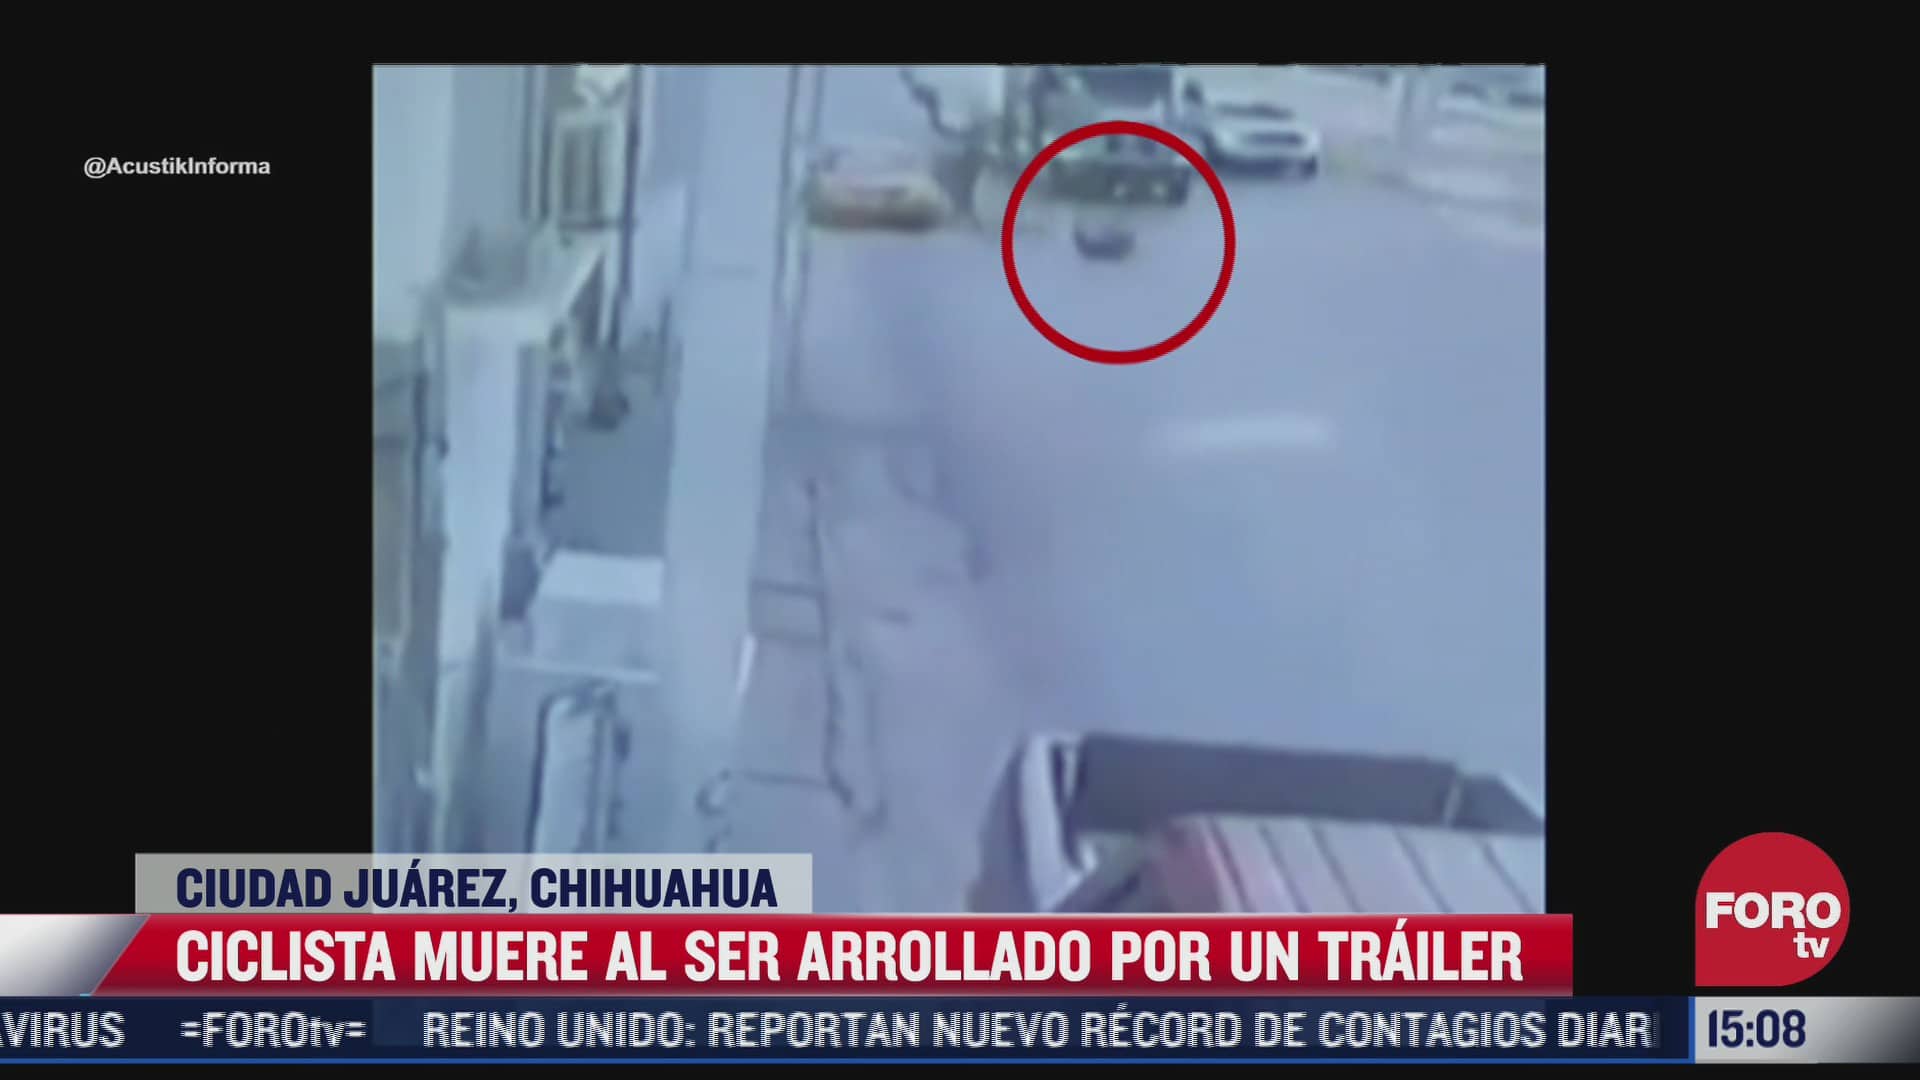 muere ciclista atropellado por trailer en cd juarez chihuahua